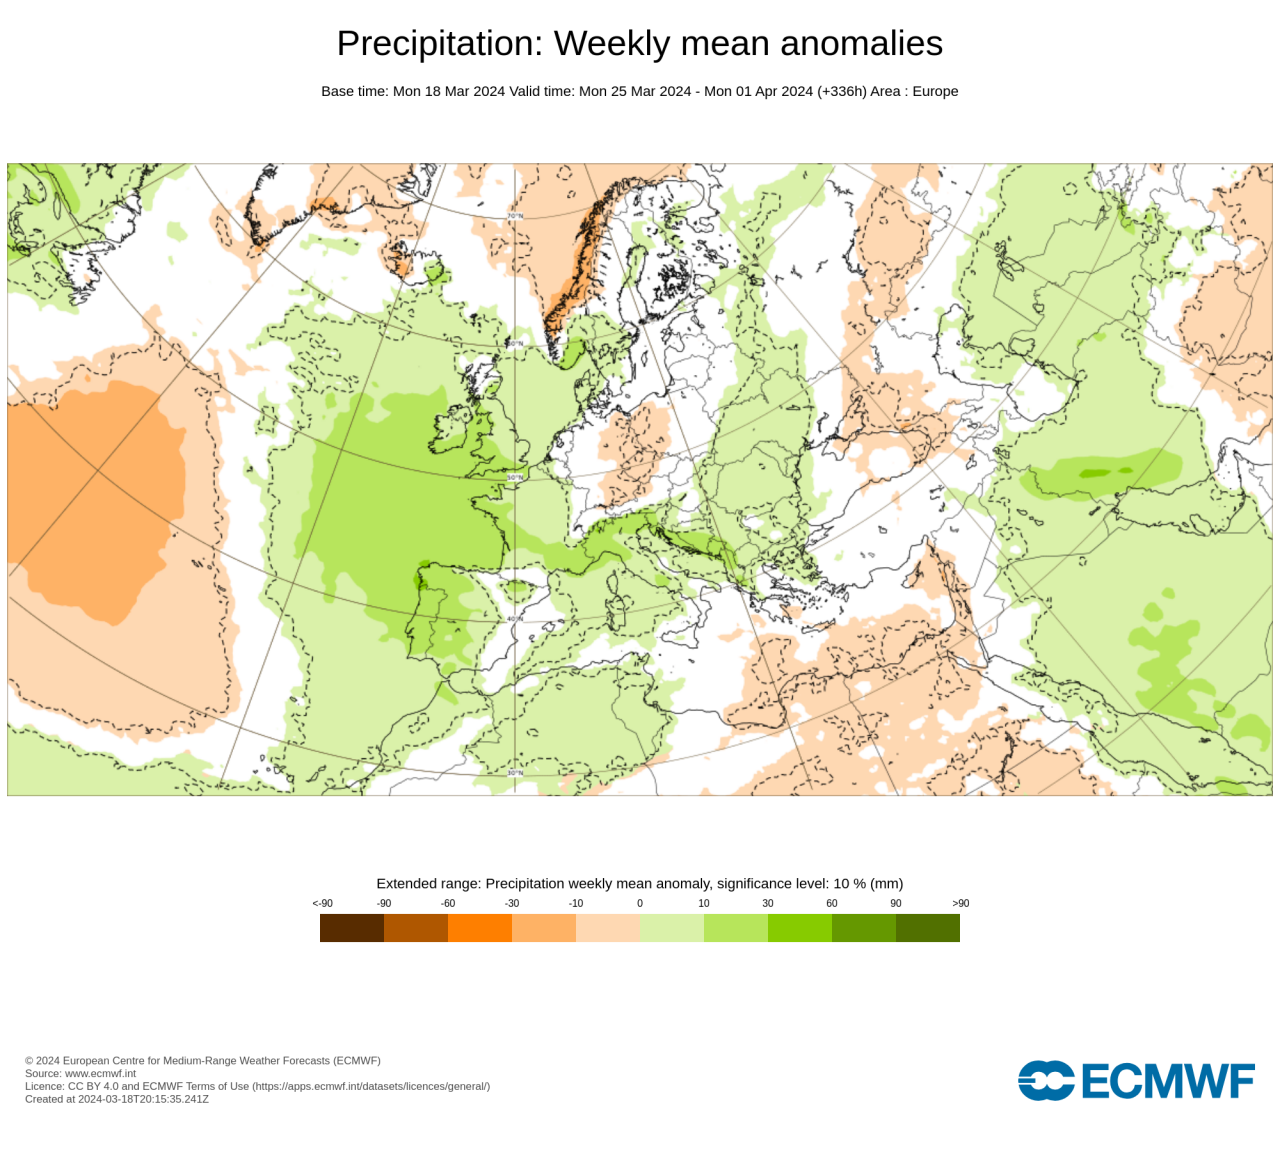 anomalie precipitazioni secondo Ecmwf nella Settimana Santa